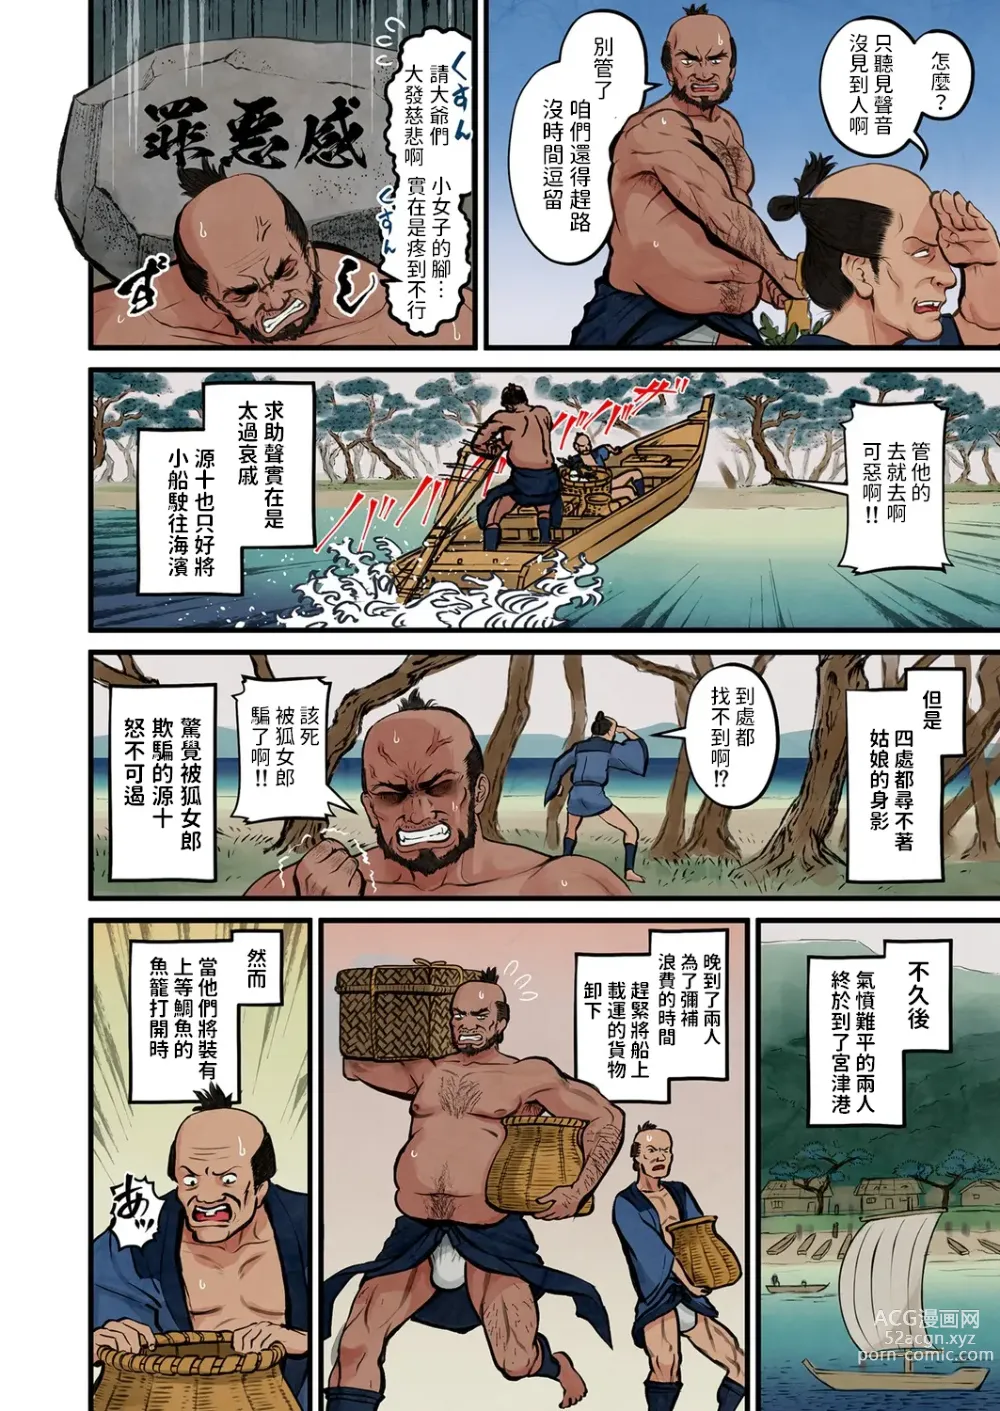 Page 5 of manga Nihon Mukashi Ero Banashi 3 “Hashidate Komerou”